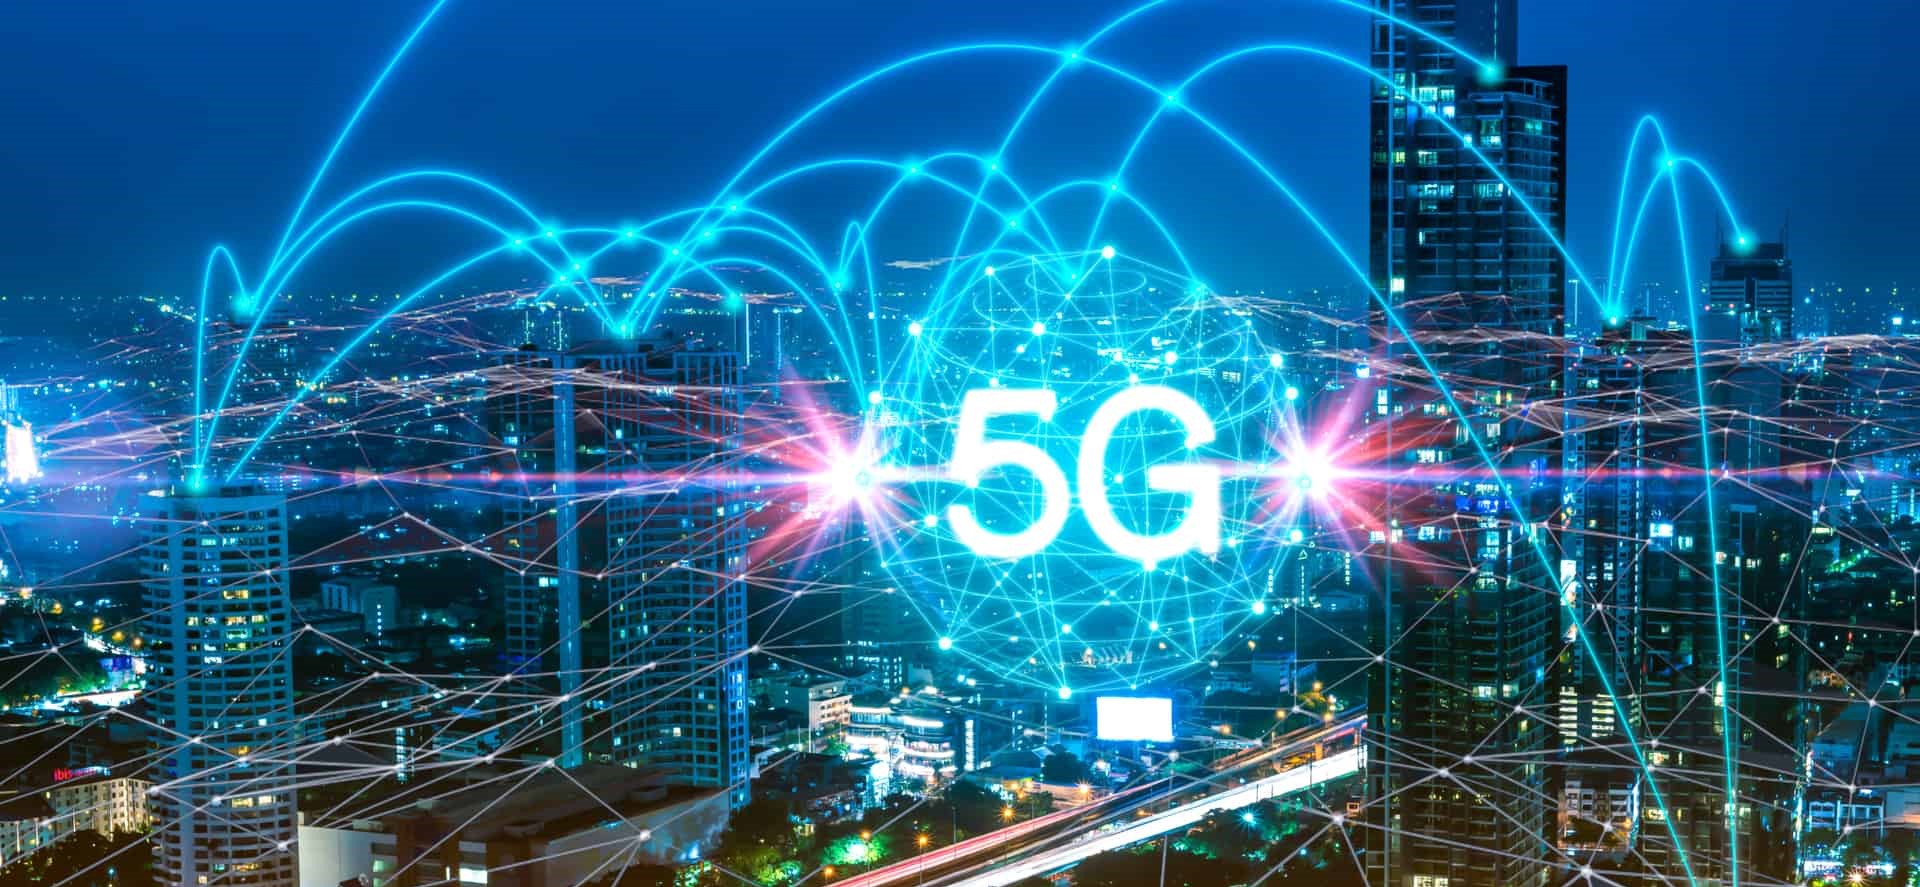 ΕΕΤΤ: Εντός του 2020 η δημοπράτηση του φάσματος συχνοτήτων 5G